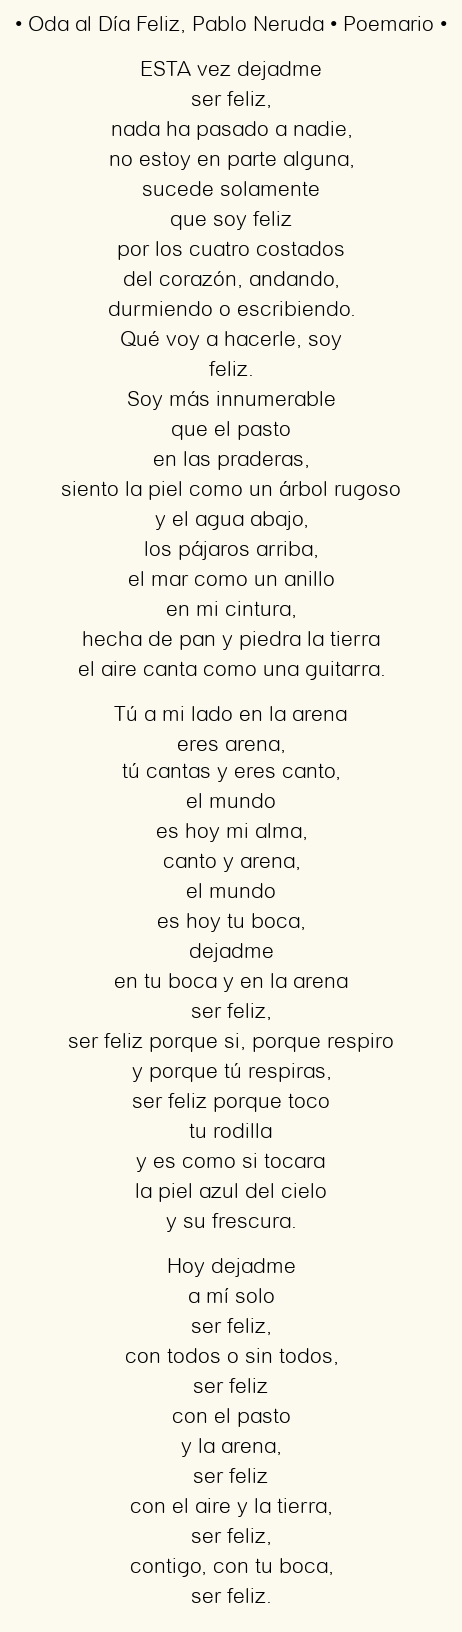 Imagen con el poema Oda al Día Feliz, por Pablo Neruda